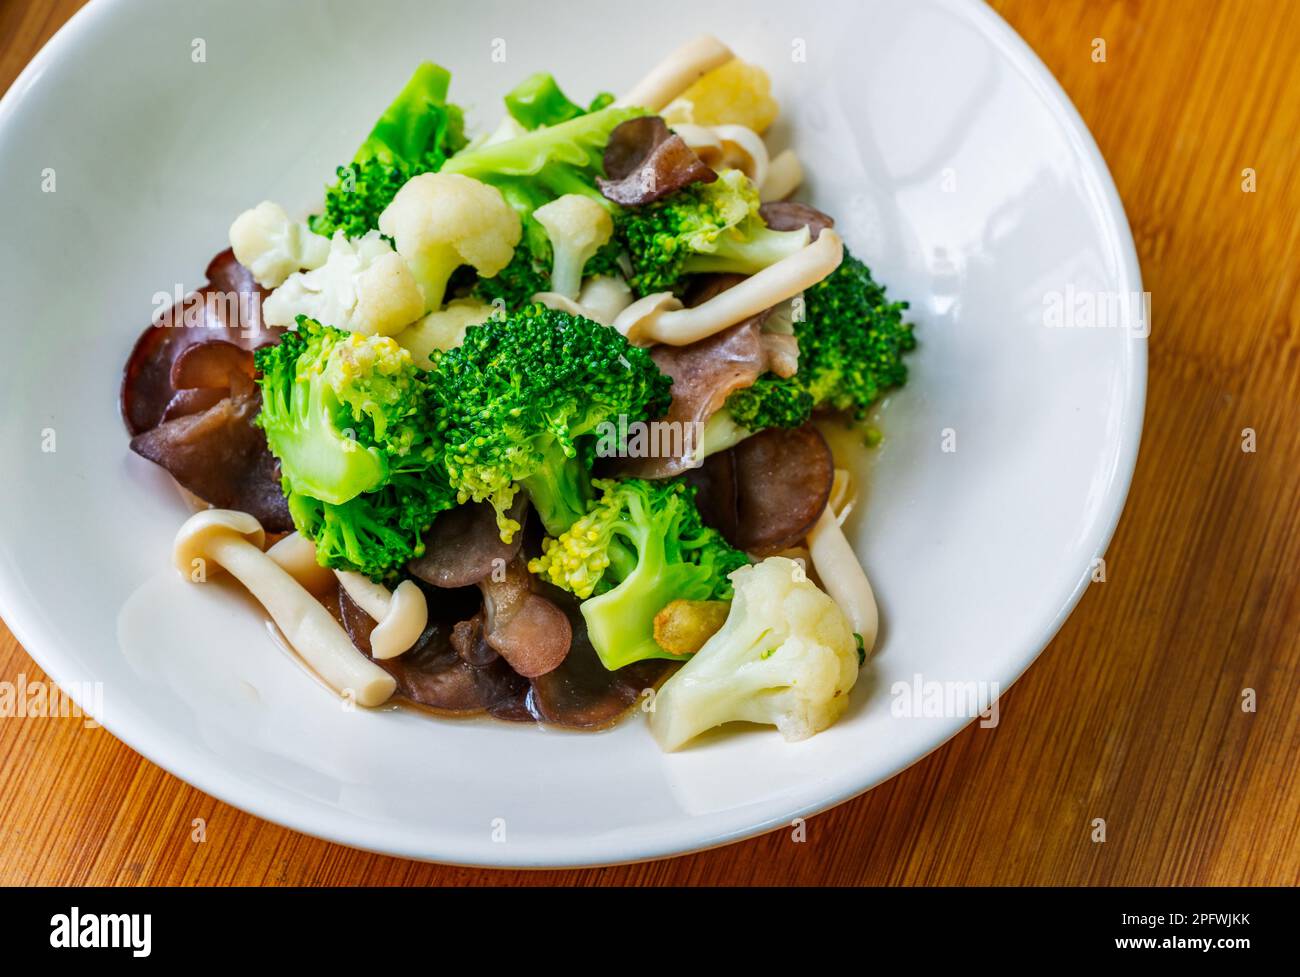 Menu di cibi salutari, funghi fritti in padella, cavolfiore e broccoli, cibo di verdure misto tailandese sano su un piatto bianco. Immagine ravvicinata, vista dall'alto. Foto Stock